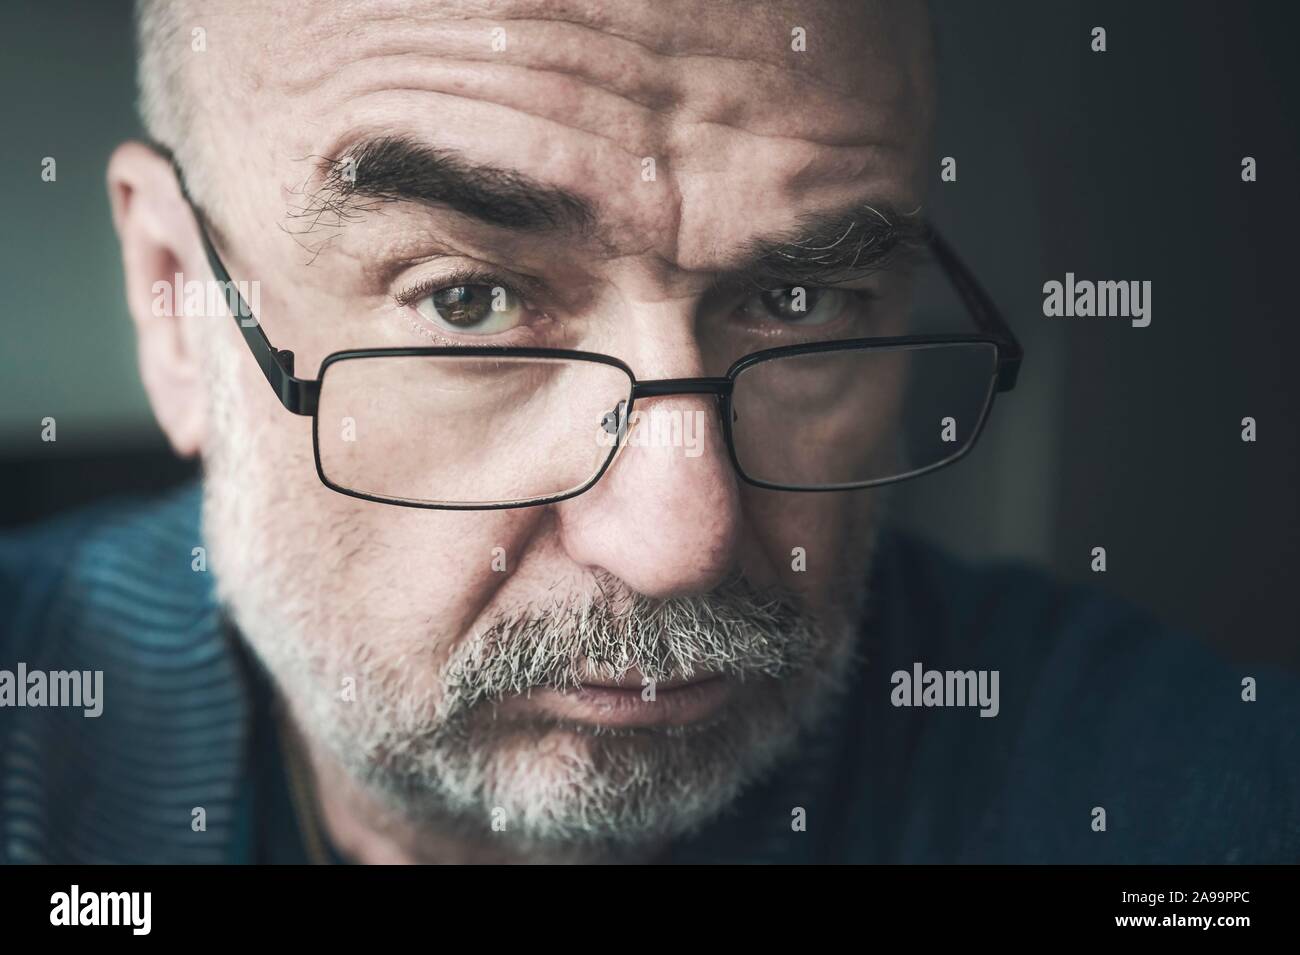 Ritratto, uomo anziano con gli occhiali e la barba, ritratto, visualizzare nella fotocamera, nella Renania settentrionale-Vestfalia, Germania Foto Stock